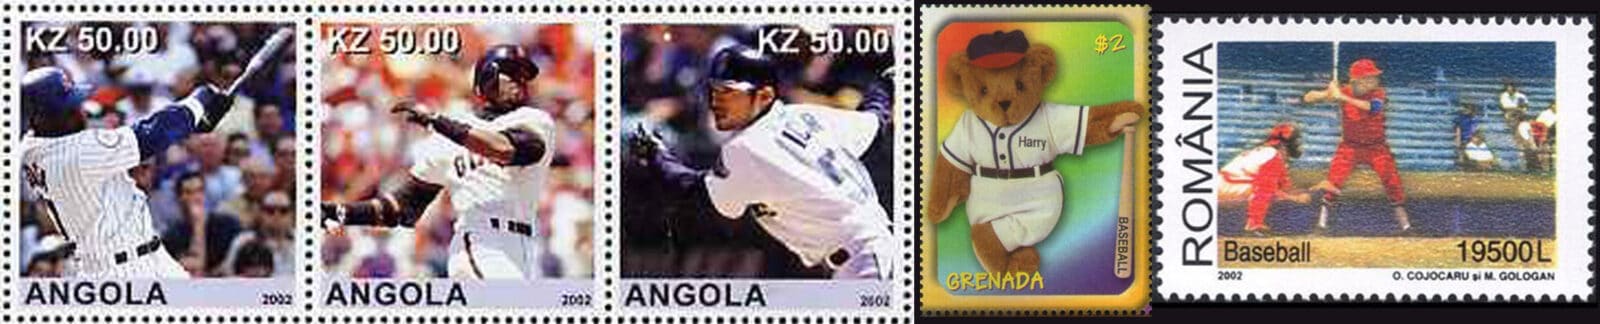 2002 Baseball Postage Stamps Header